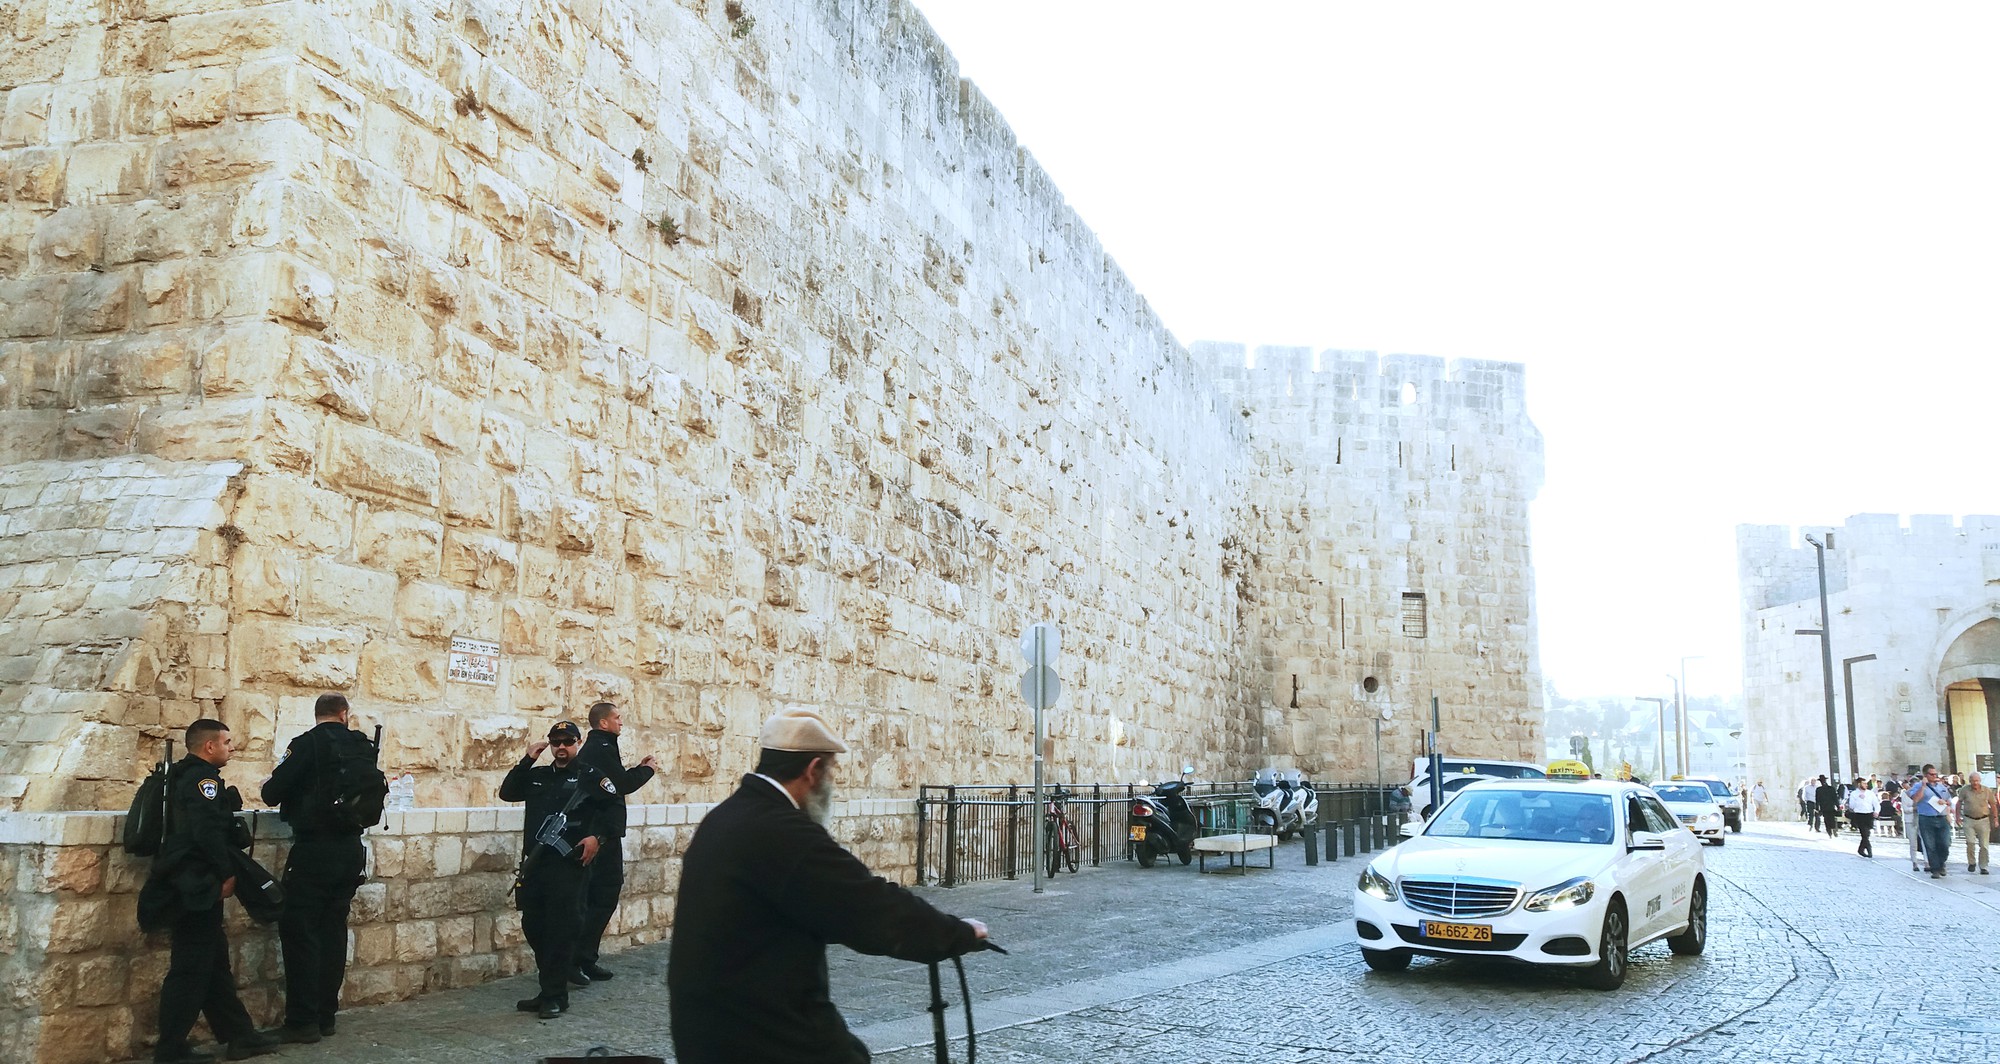 [PHOTO ESSAY] Hành trình tới thánh địa Jerusalem: Dưới chân bức tường Than Khóc - Ảnh 21.